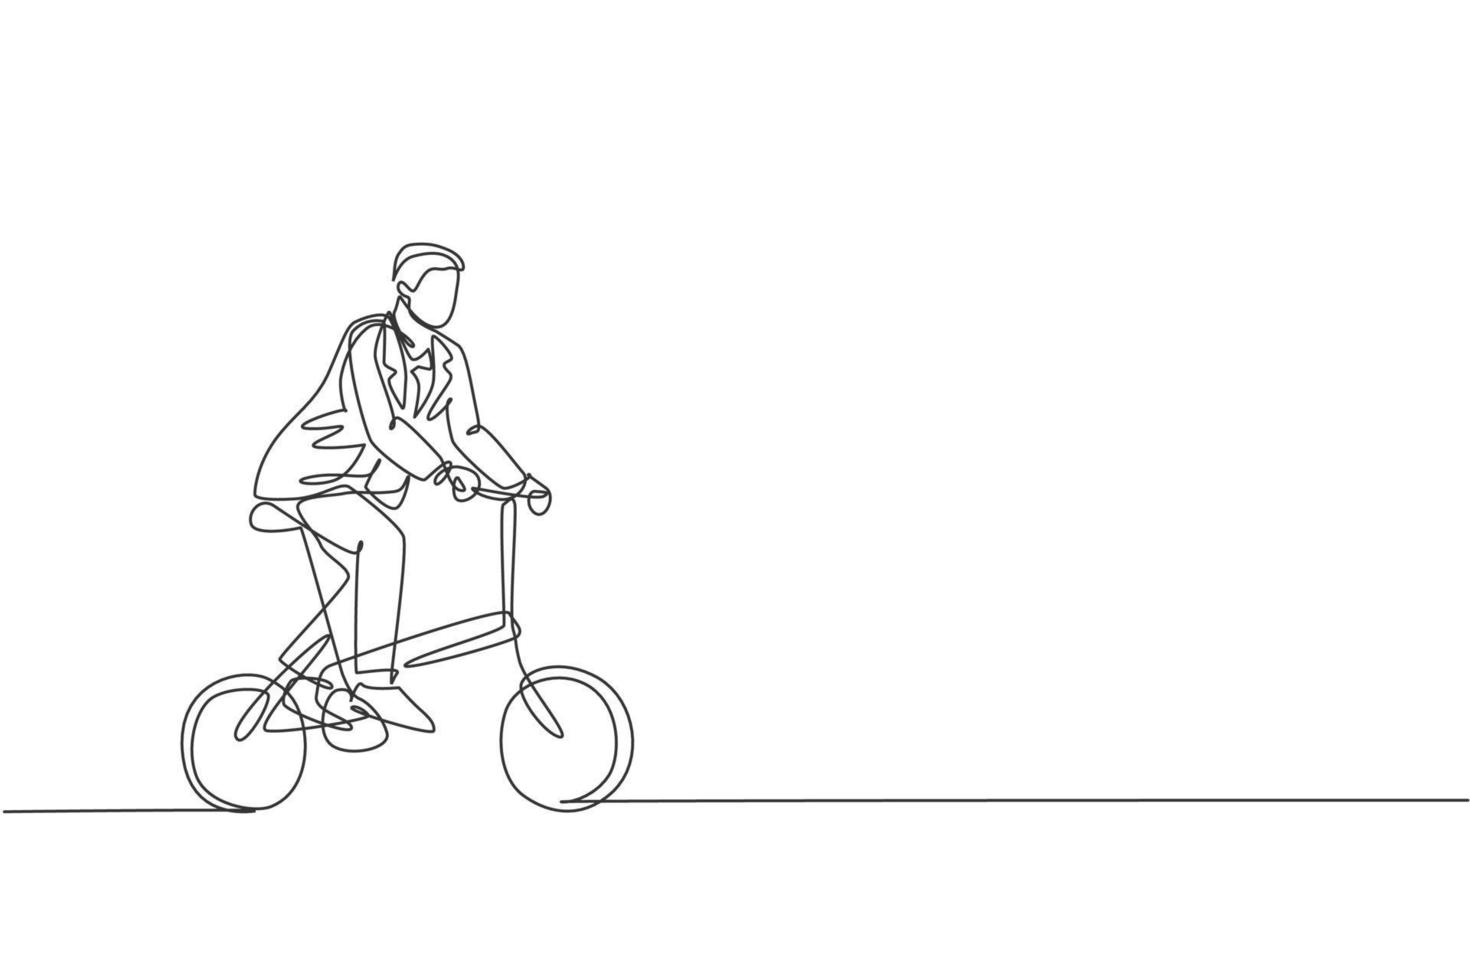 un dibujo de línea continua de un joven gerente profesional que va en bicicleta a su oficina. concepto de estilo de vida urbano de trabajo saludable. Ilustración de vector de diseño de dibujo de línea única dinámica